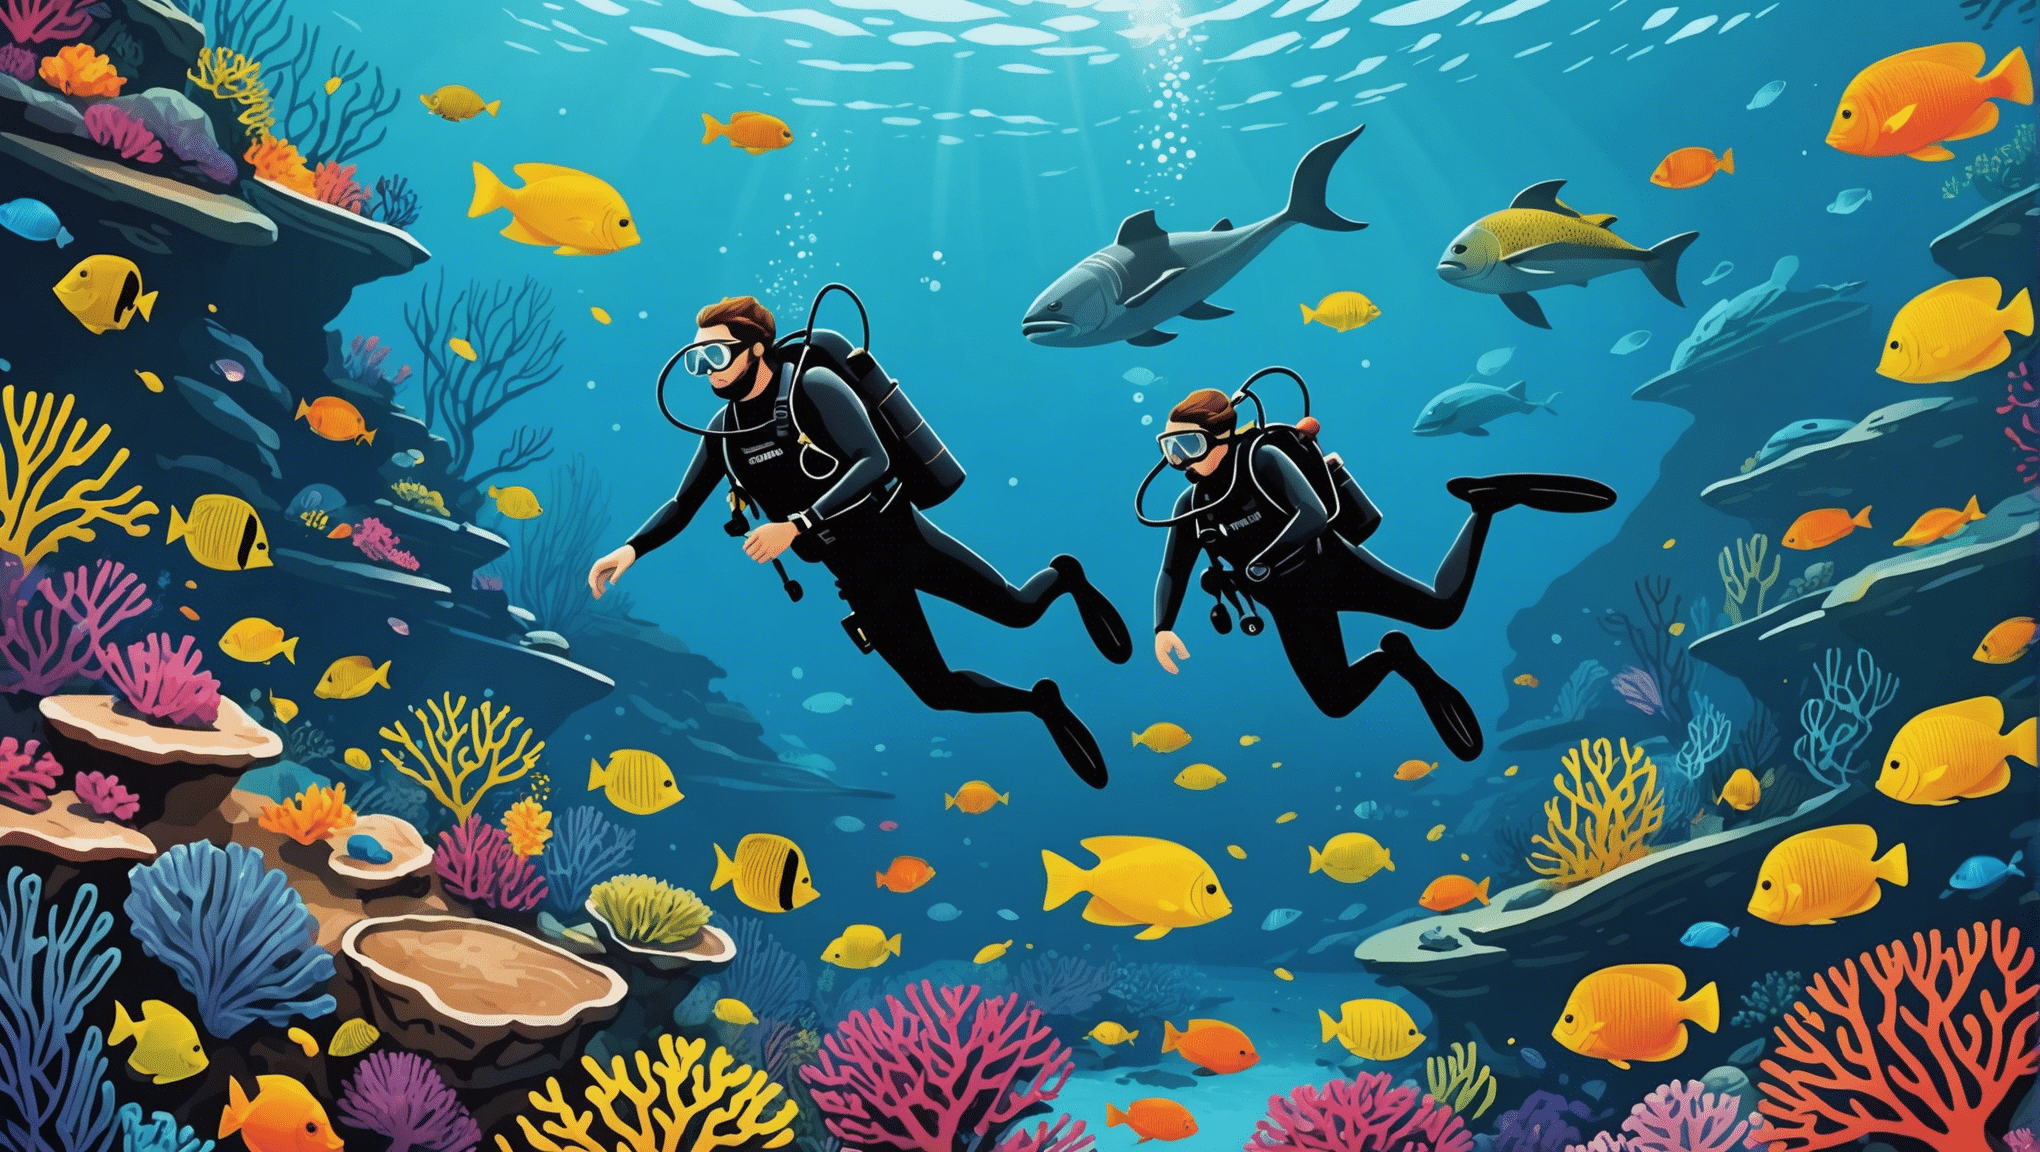 descubra os melhores pontos de mergulho do mundo e descubra a beleza subaquática com nossos destinos imperdíveis.